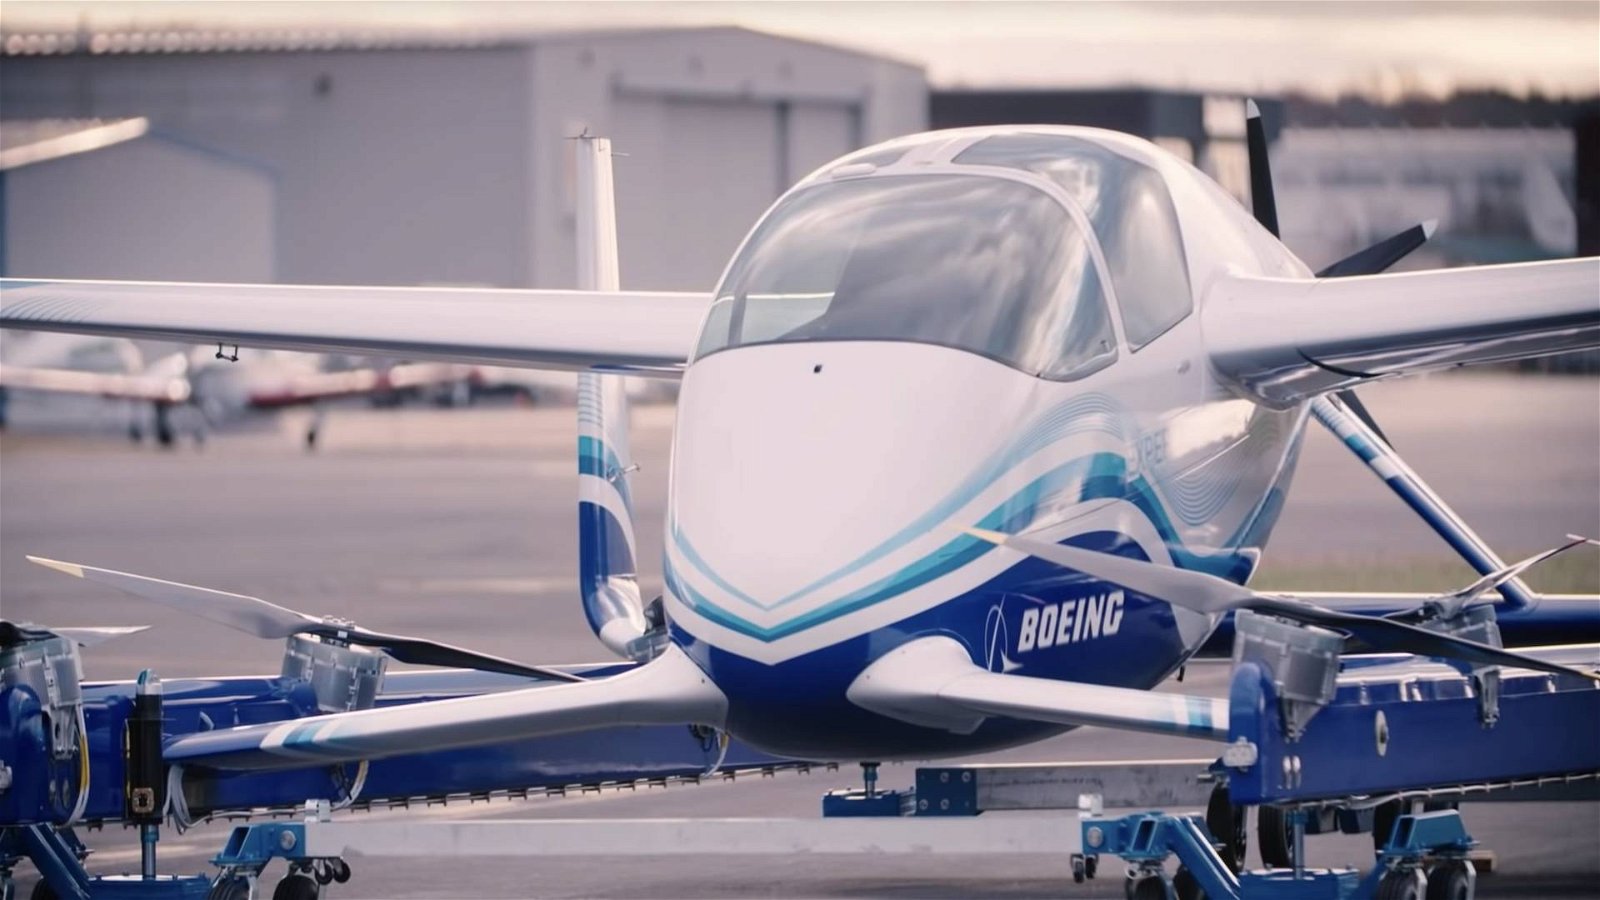 Immagine di Boeing, l'aerotaxi a guida autonoma completa il primo test di volo